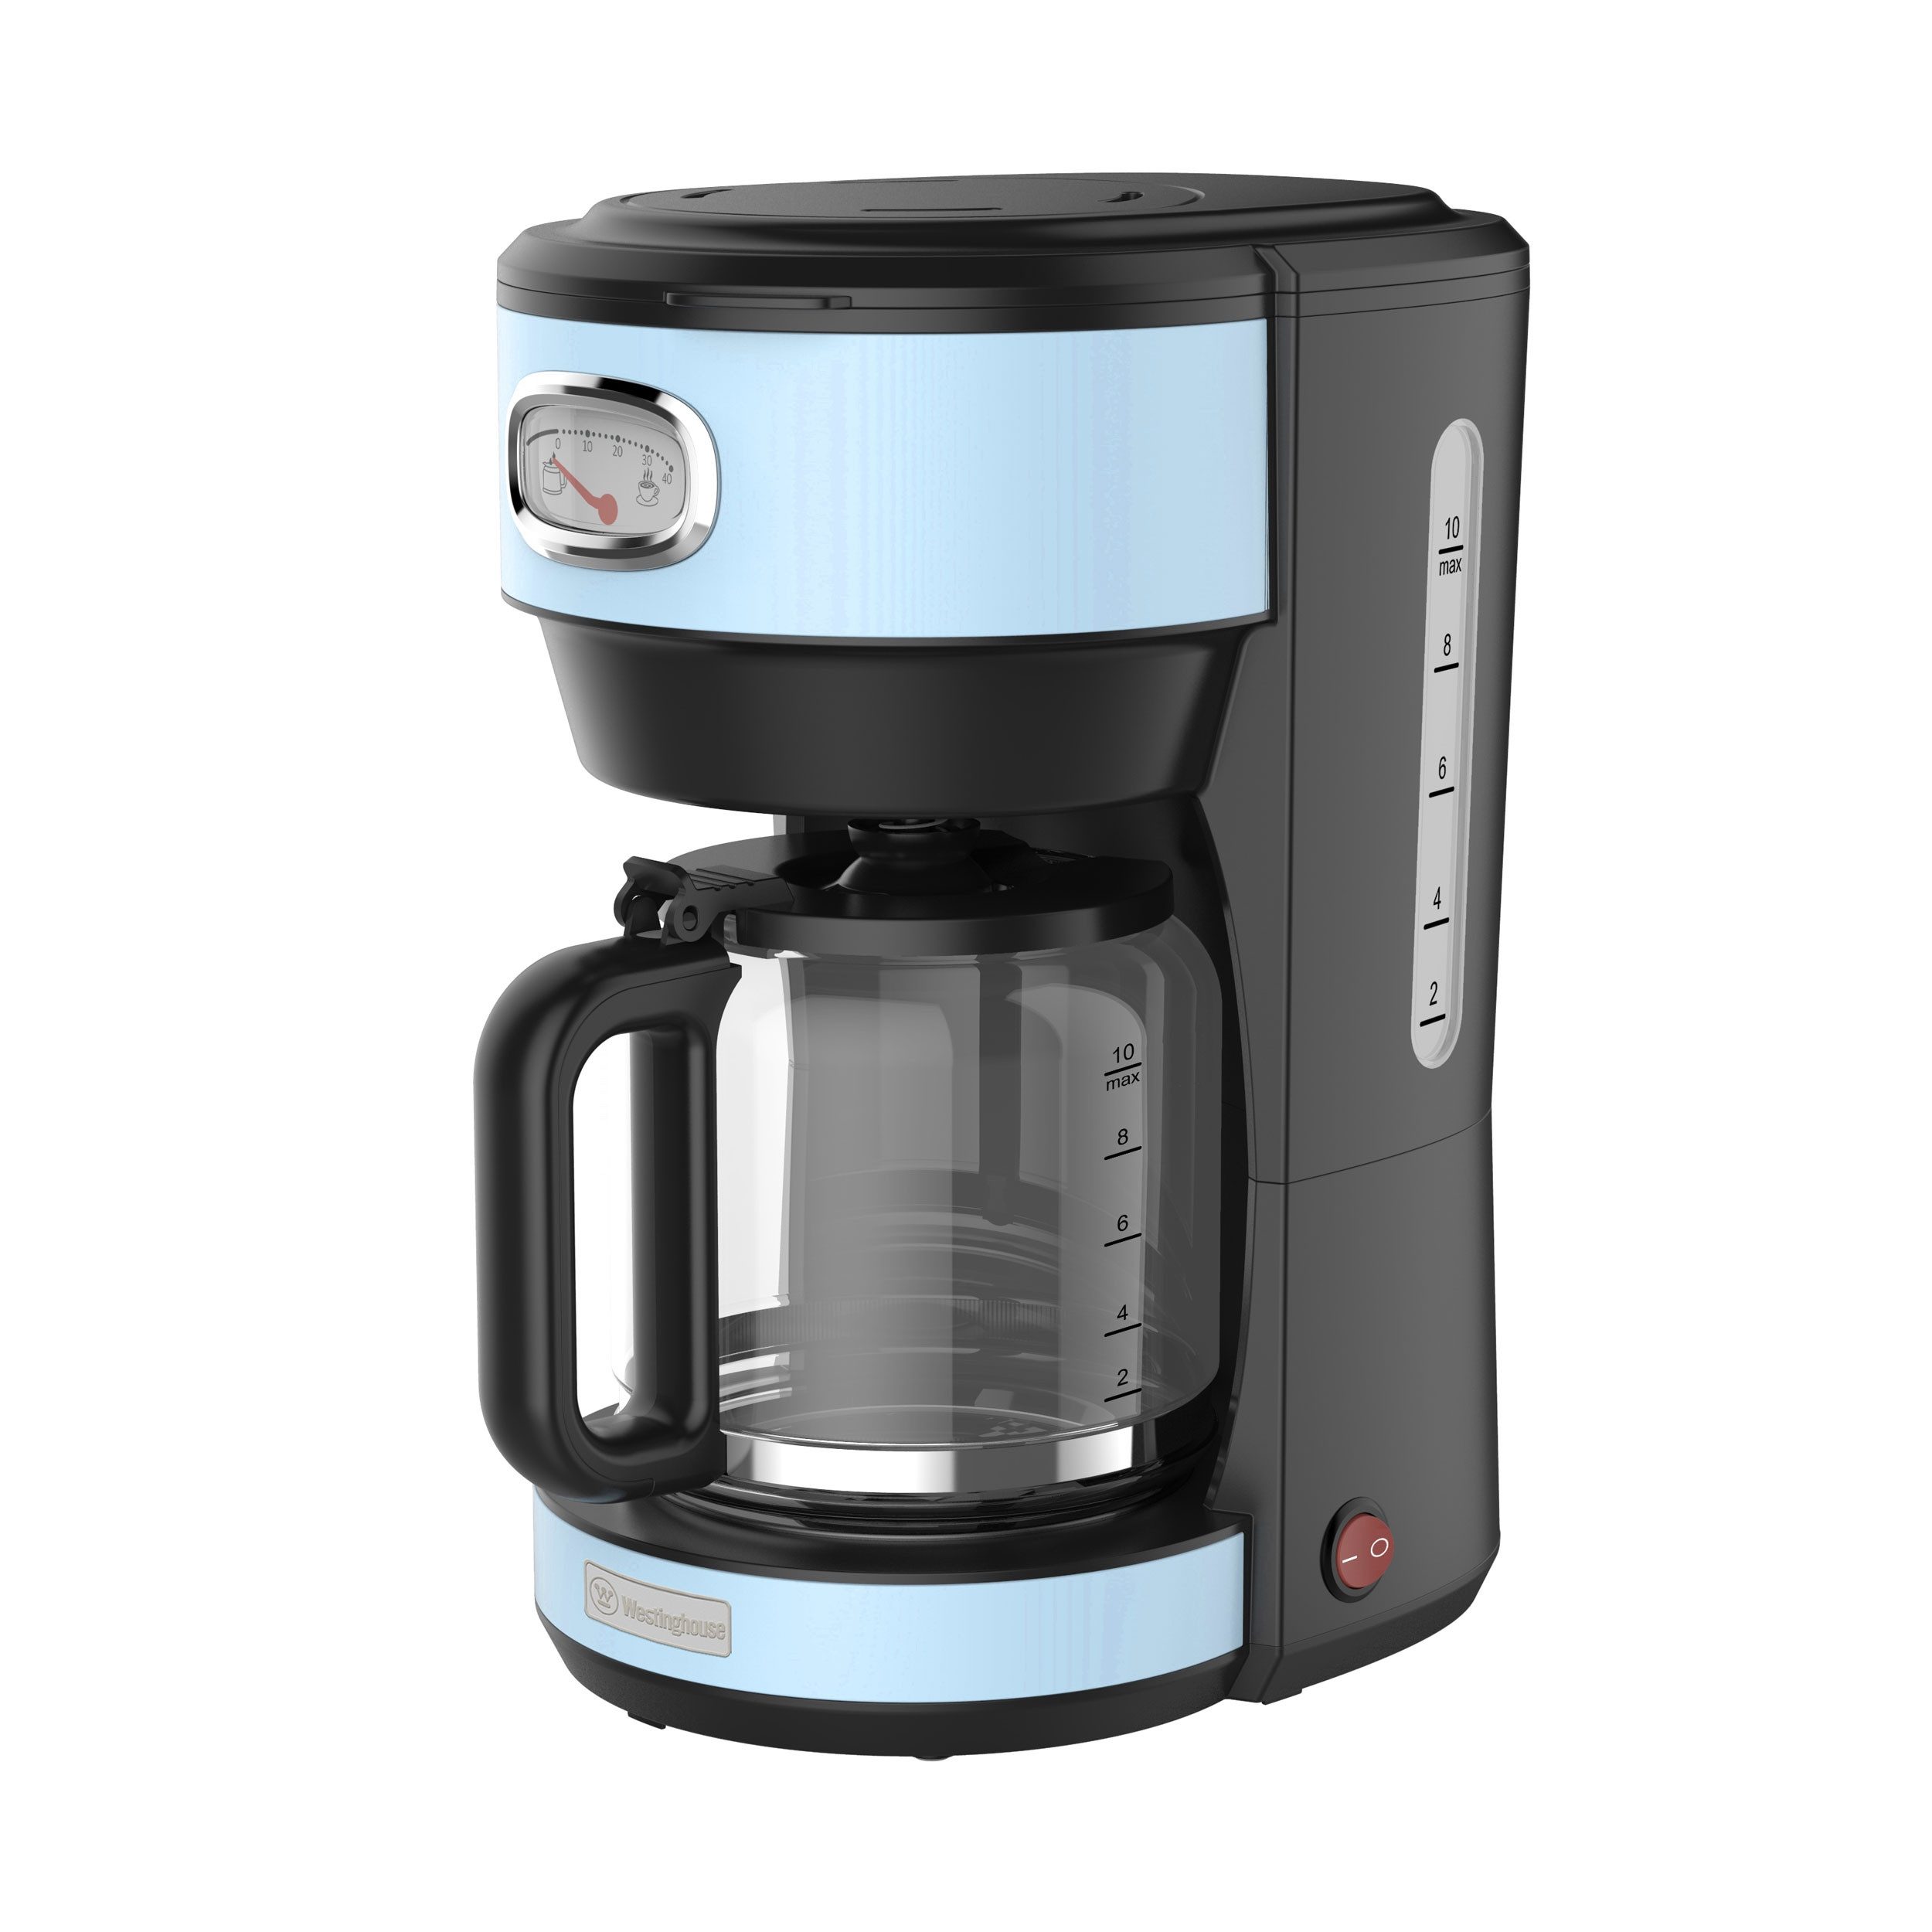 Westinghouse Filterkaffeemaschine WKCMR621 Retro, 1,25l Kaffeekanne, 30 min Warmhaltefunktion, Tropfschutz